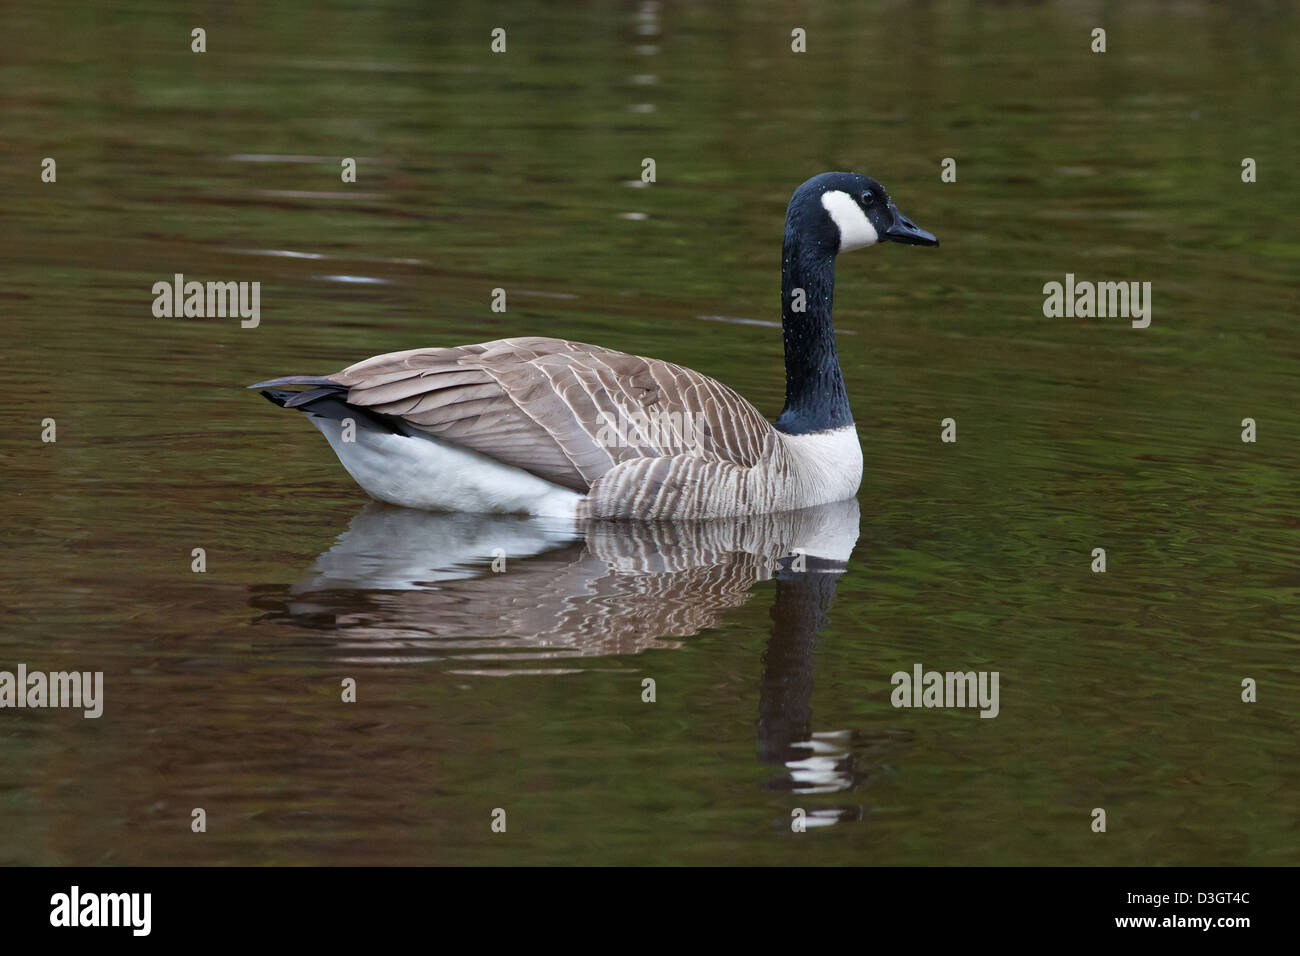 Canada Goose nuotare in un laghetto rendendo le increspature e che mostra una riflessione Foto Stock